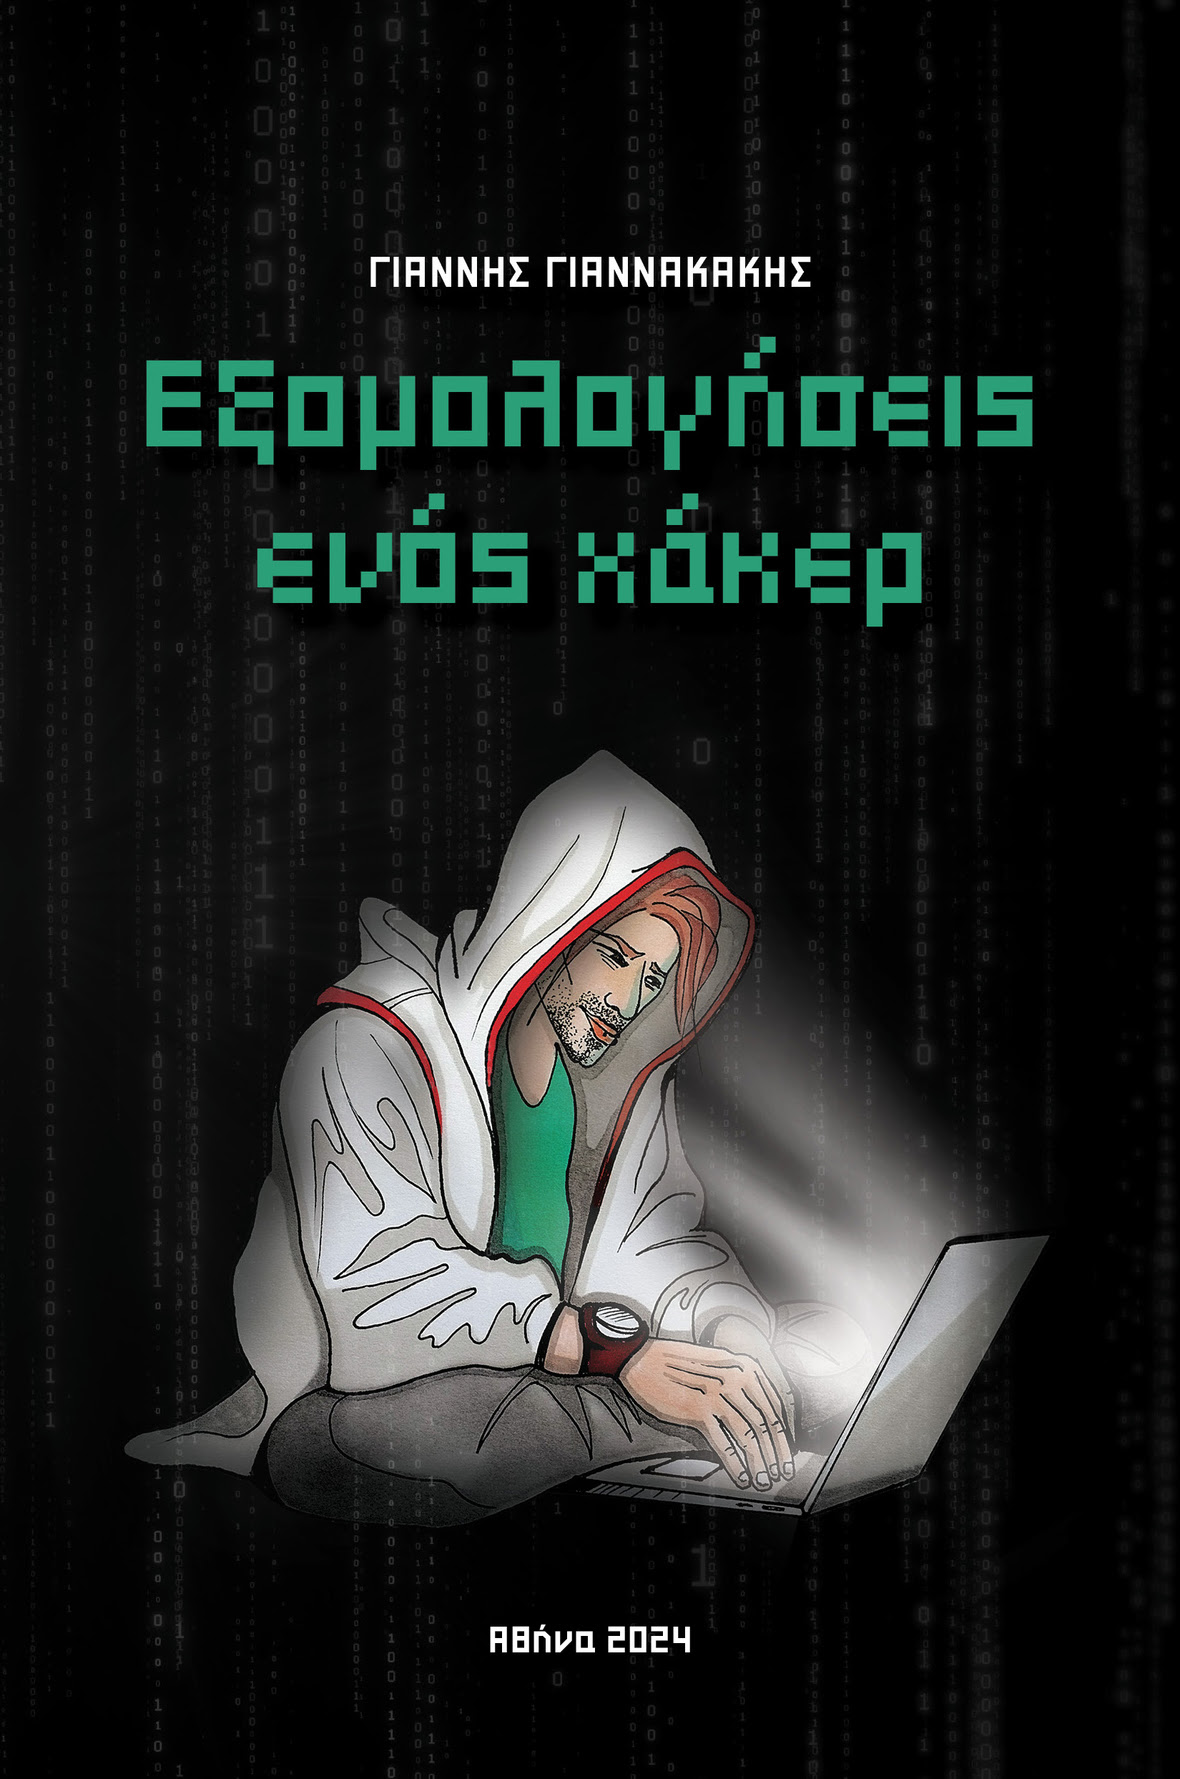 giannakakis hacker